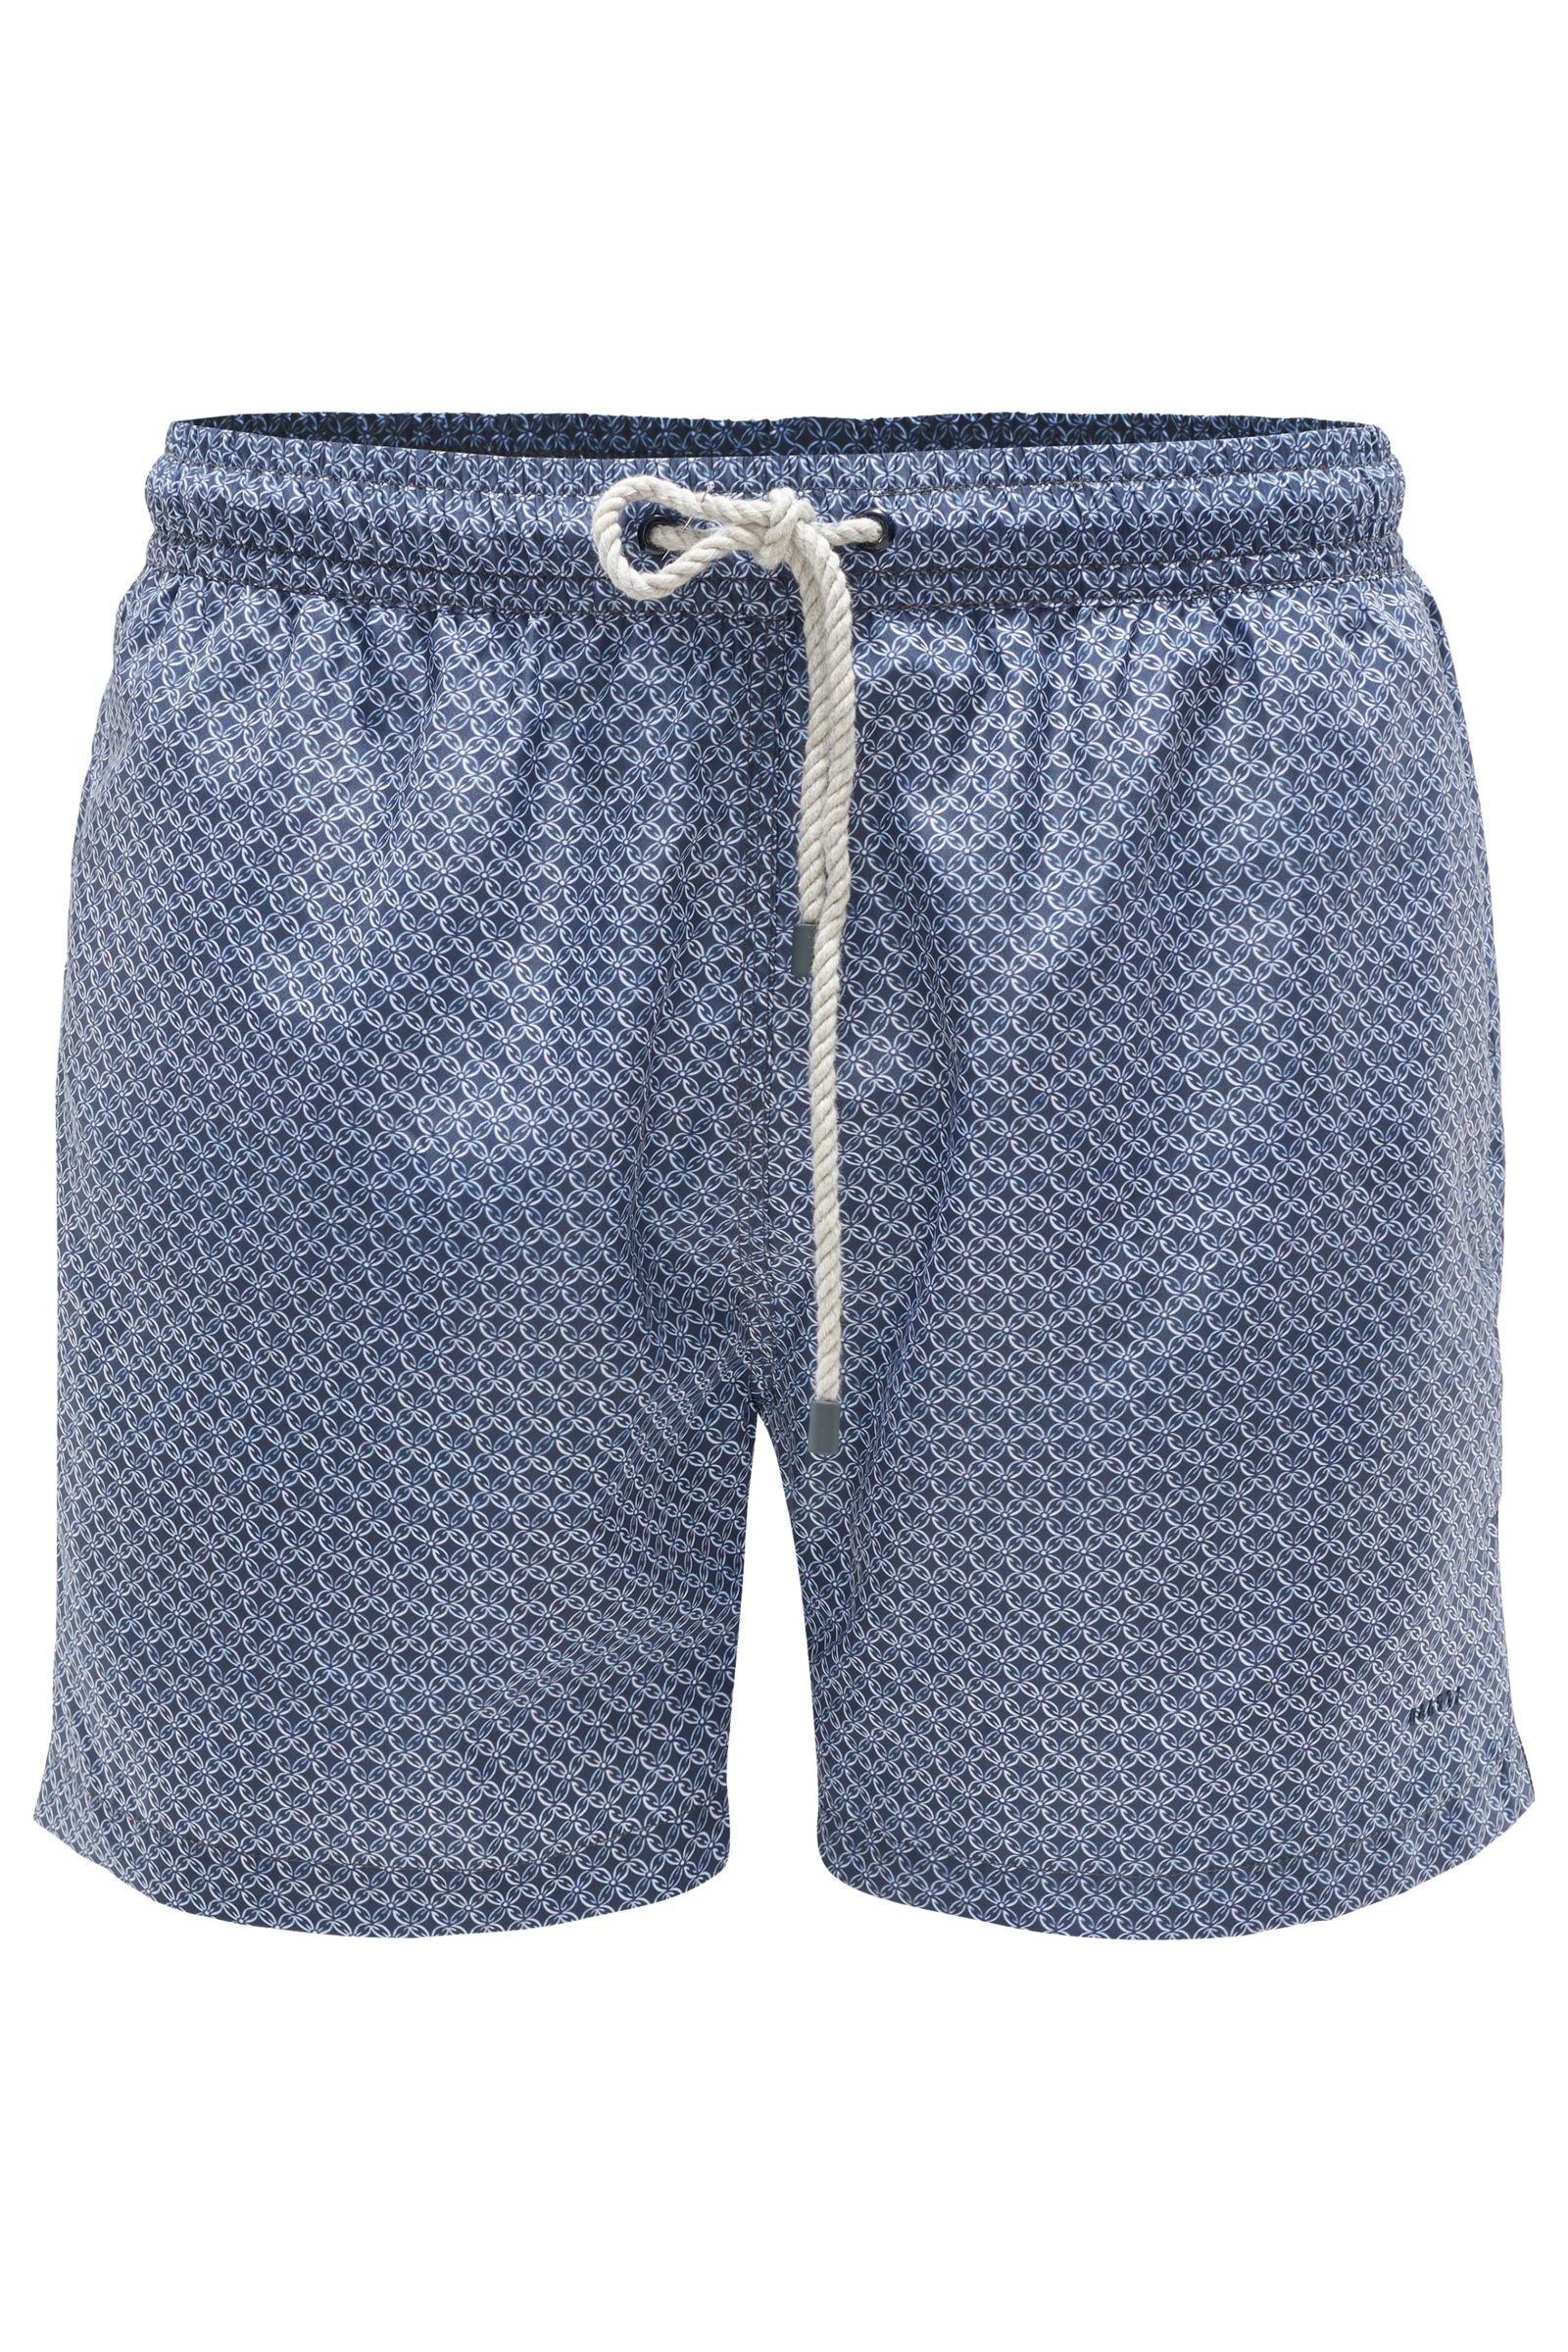 Swim shorts grey-blue/white patterned